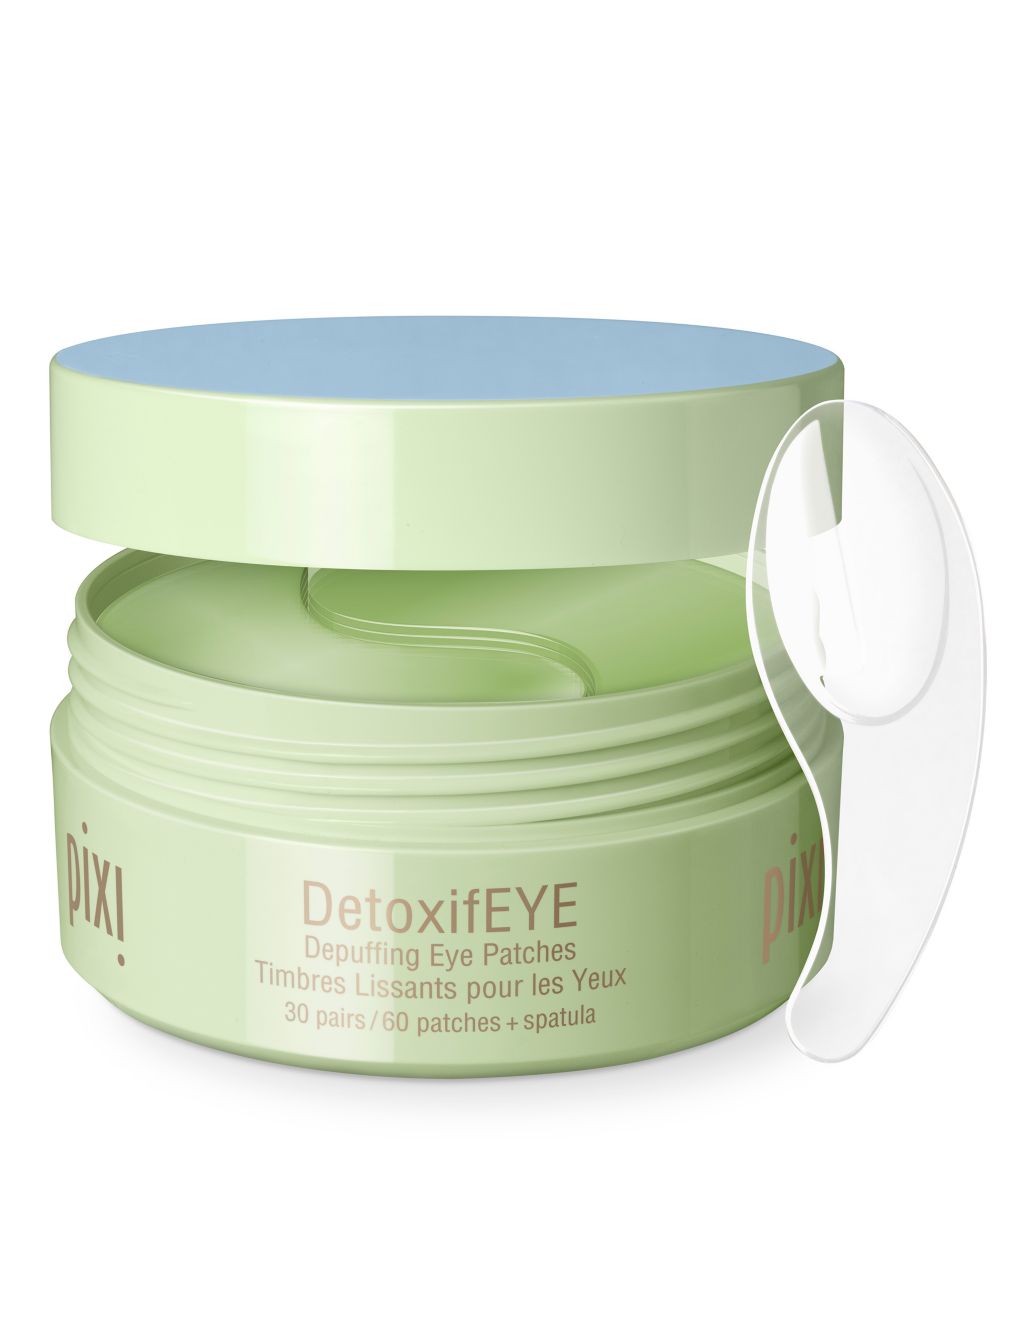 DetoxifEye Depuffing Eye Patches image 1